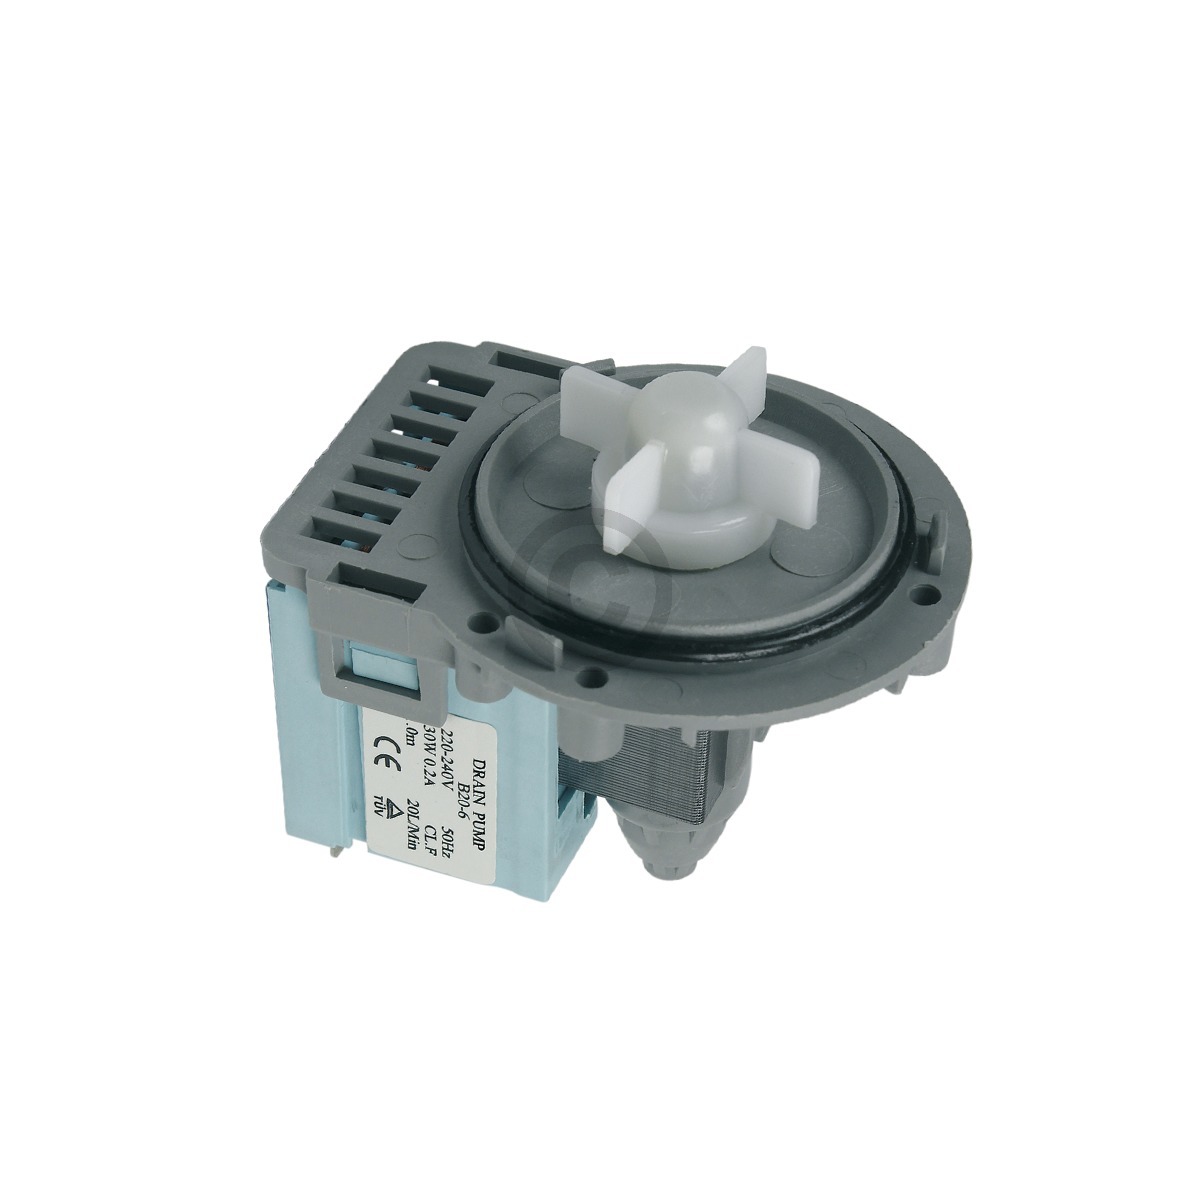 Ablaufpumpe universal kompatibel mit Pumpenmotor mit Schraubenbefestigung für Waschmaschine